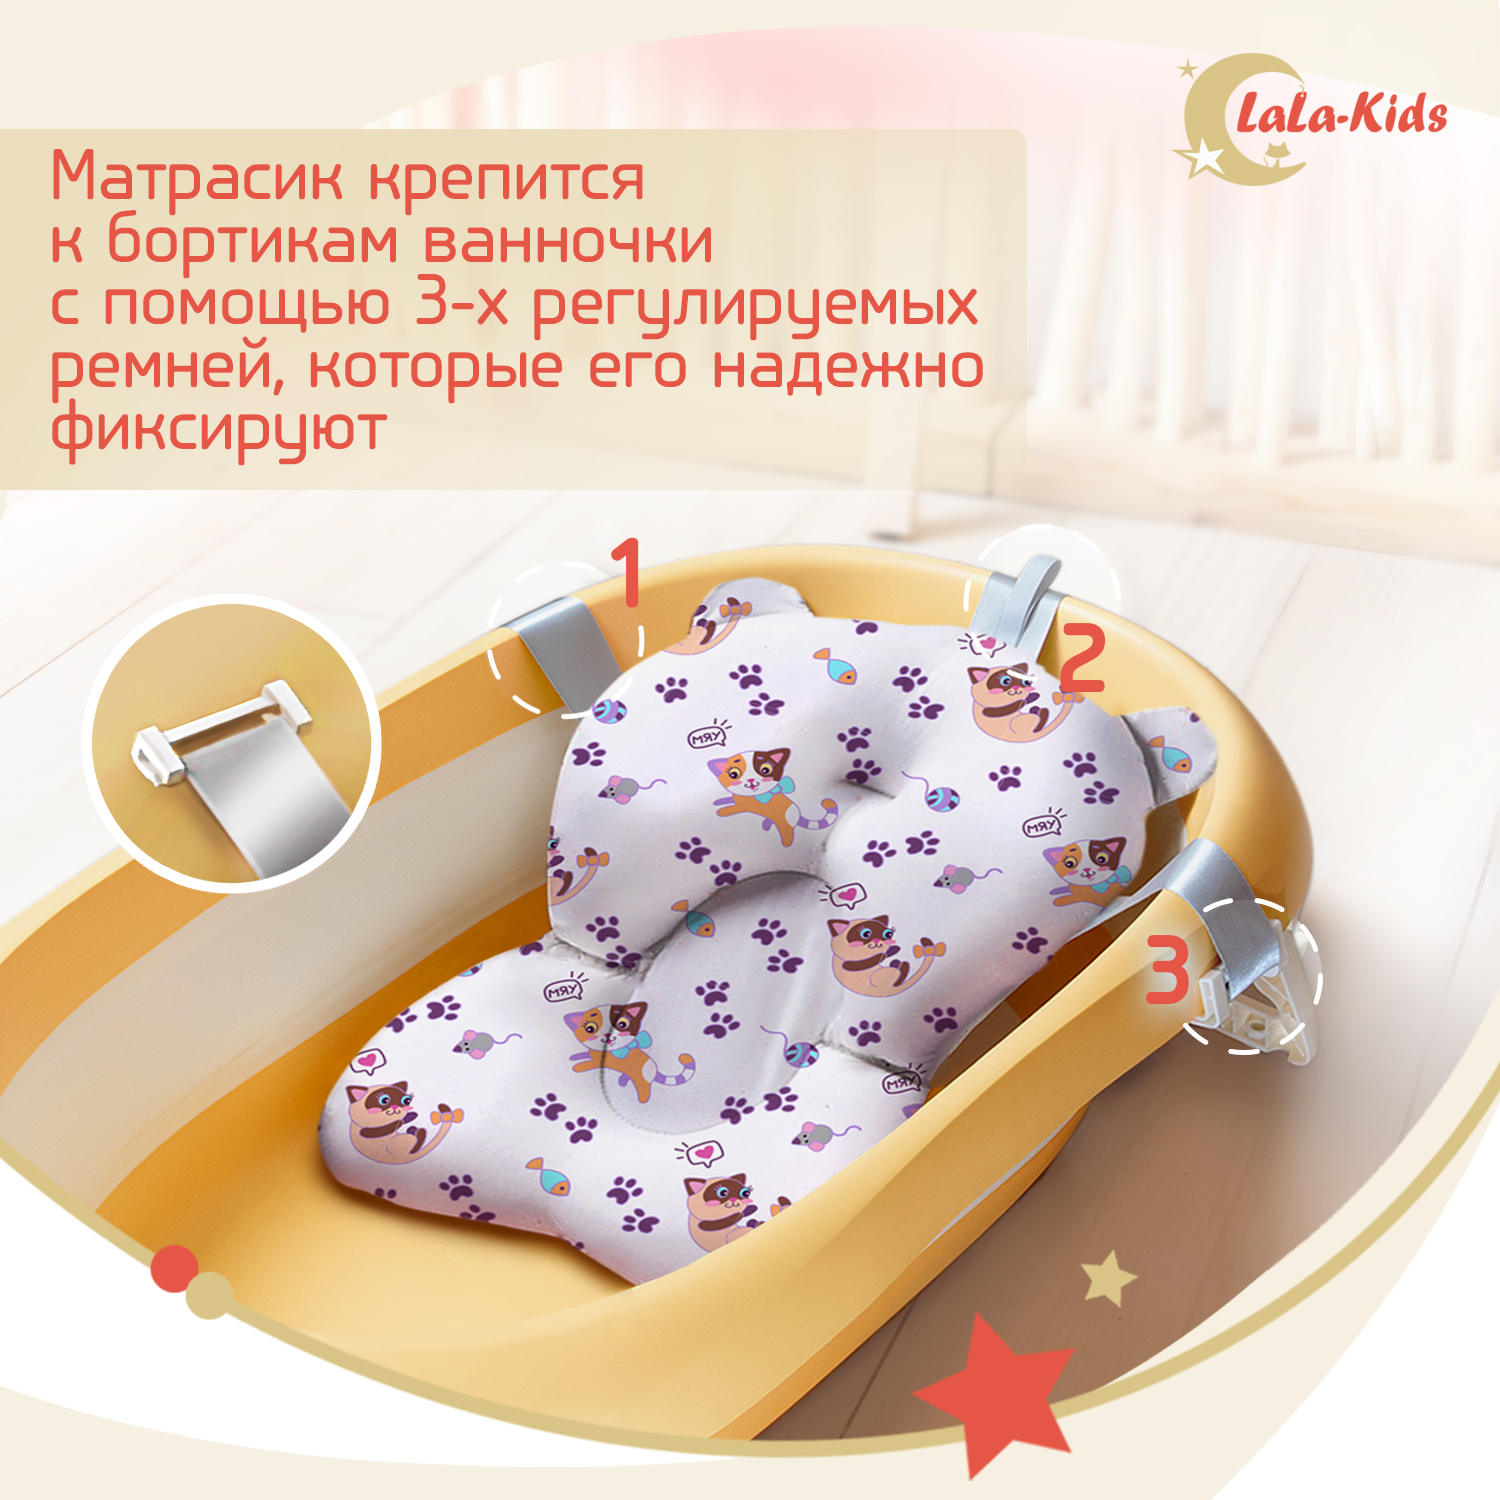 Ванночка для новорожденных LaLa-Kids складная с матрасиком ярко-лиловым в комплекте - фото 10